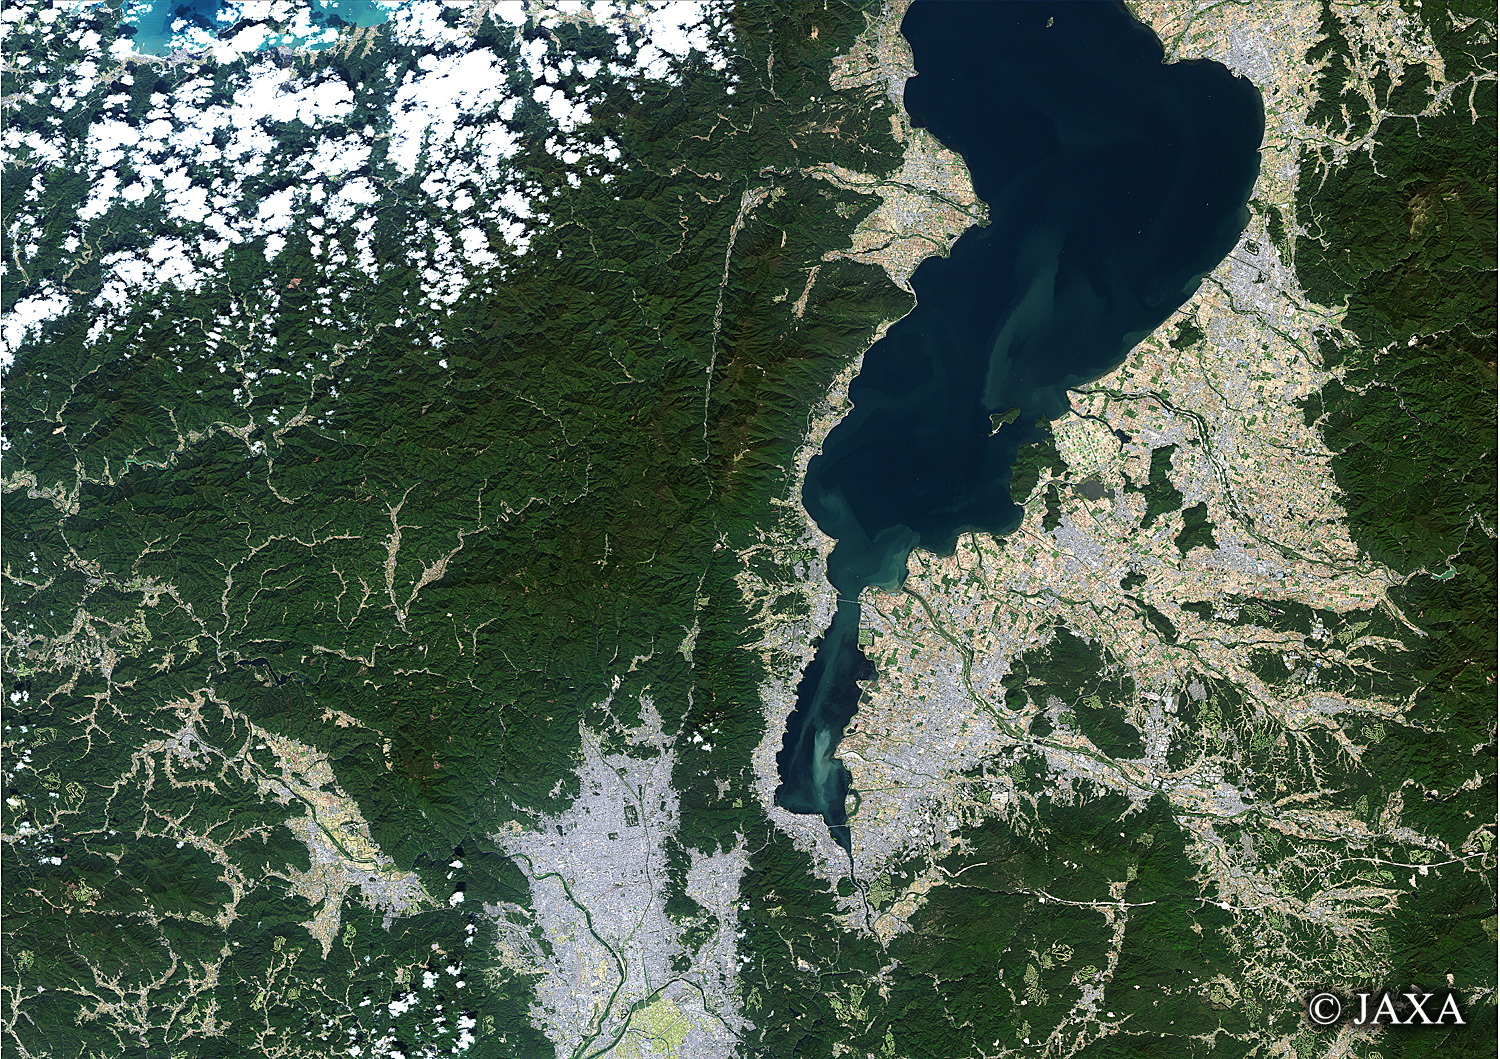 だいちから見た日本の都市 琵琶湖:衛星画像